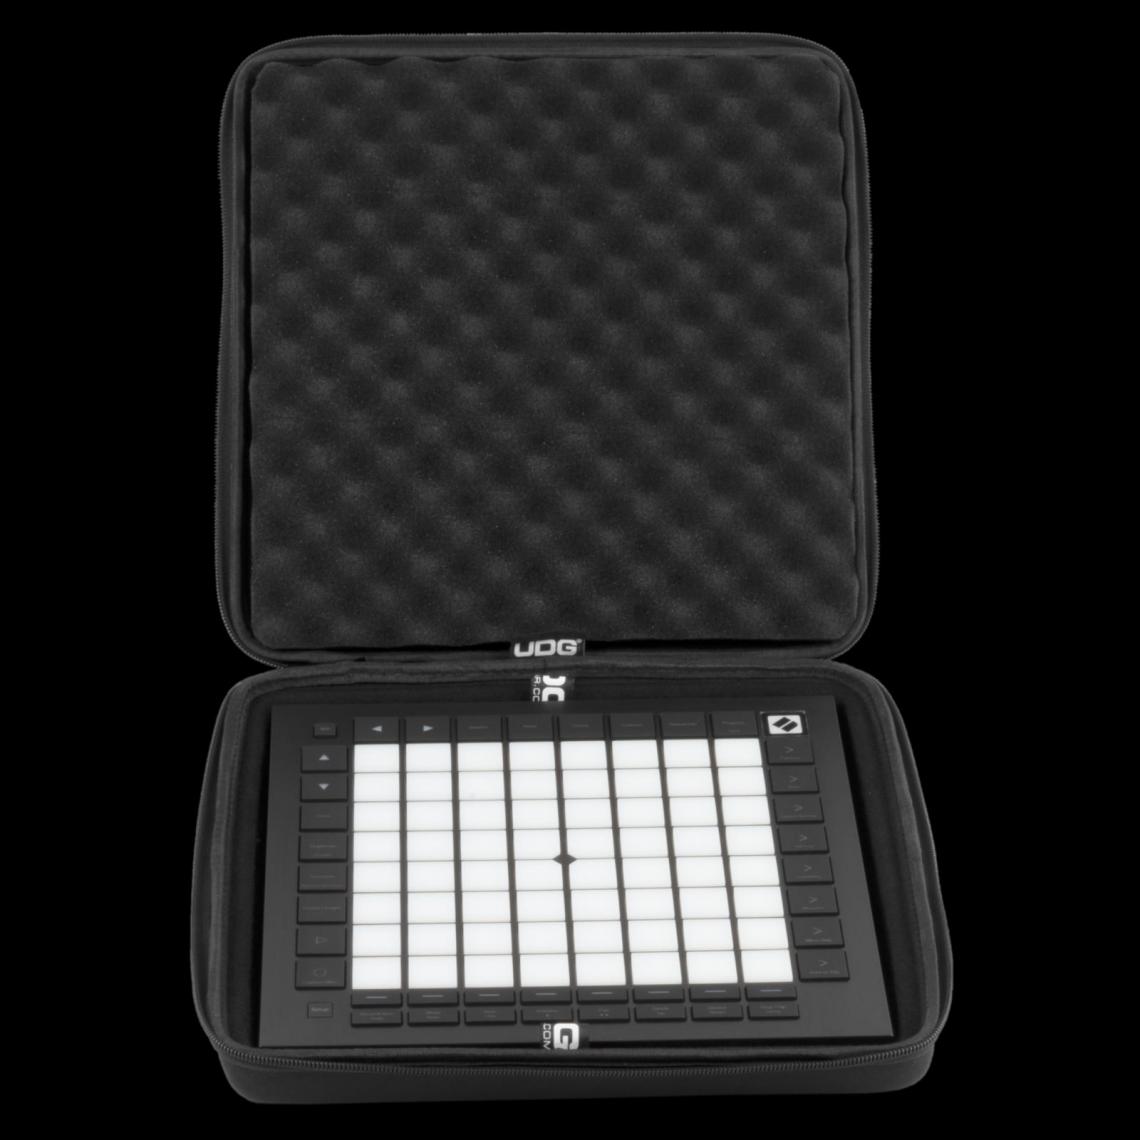 Udg - UDG U 8484 BL - UDG Creator Novation Launchpad Pro MK3 Hardcase Black - Accessoires DJ